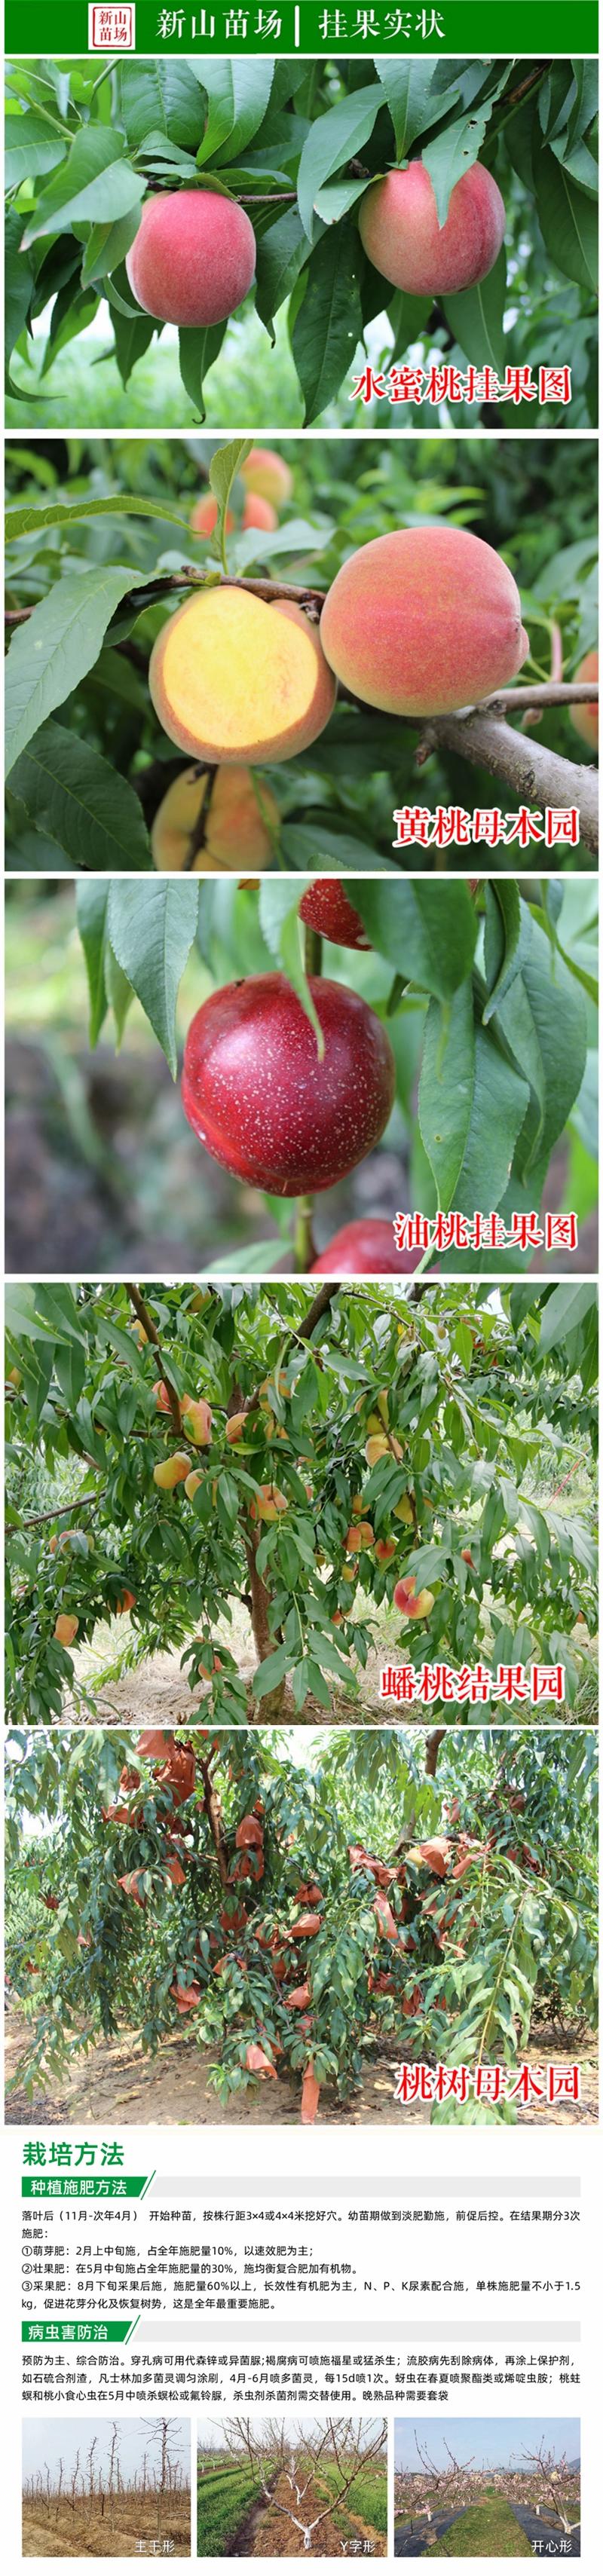 中桃5号桃苗新品种优质白桃硬脆7月成熟毛桃子树苗